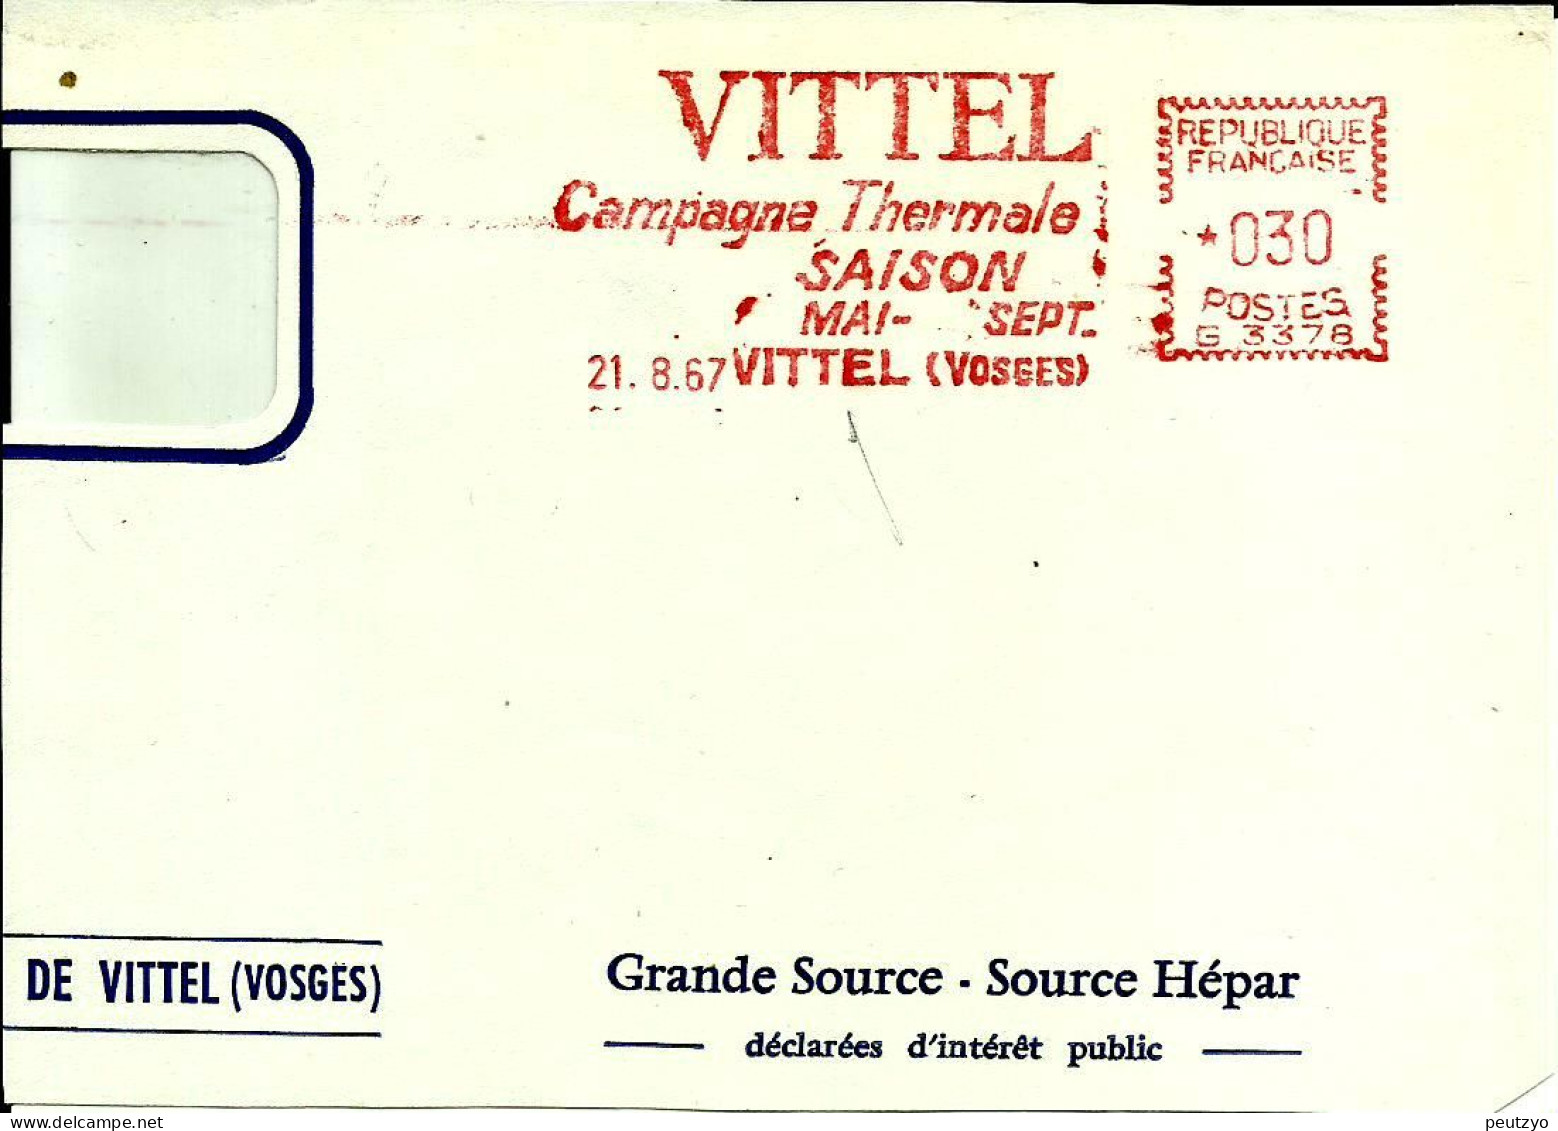 Ema Havas G 1967 Vittel Campagne Thermale Saison Boissons Eau Metier Industrie Cure 88 Vosges C29/54 - Hydrotherapy